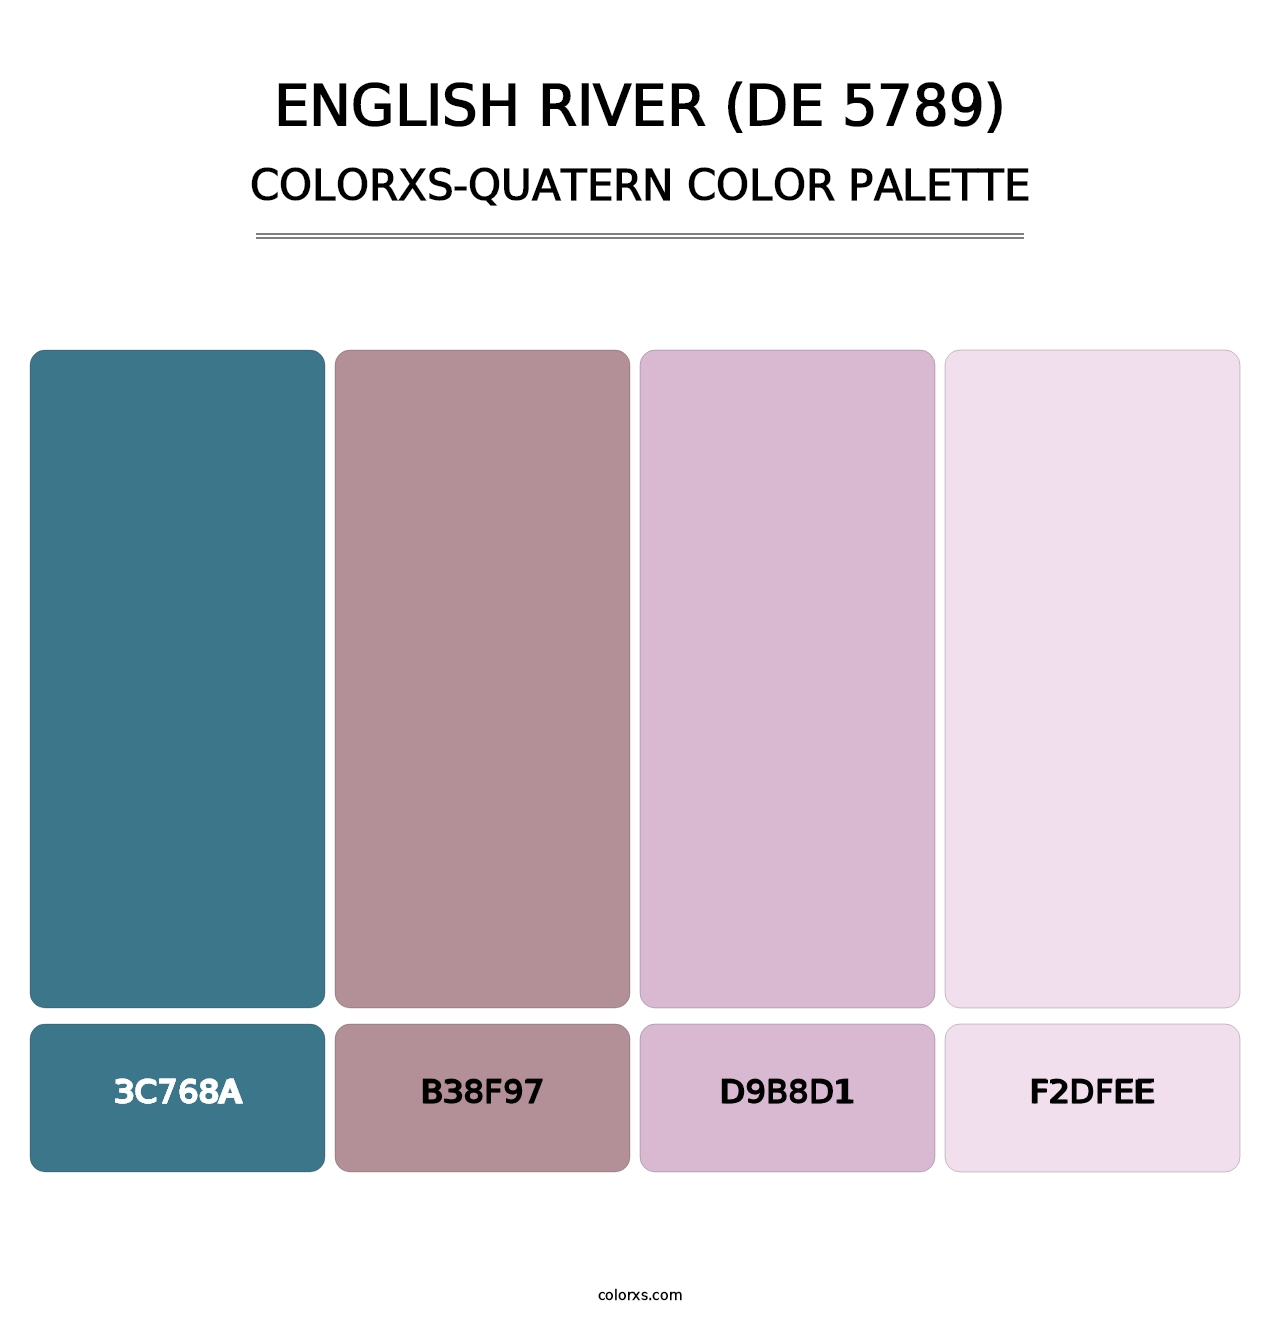 English River (DE 5789) - Colorxs Quatern Palette